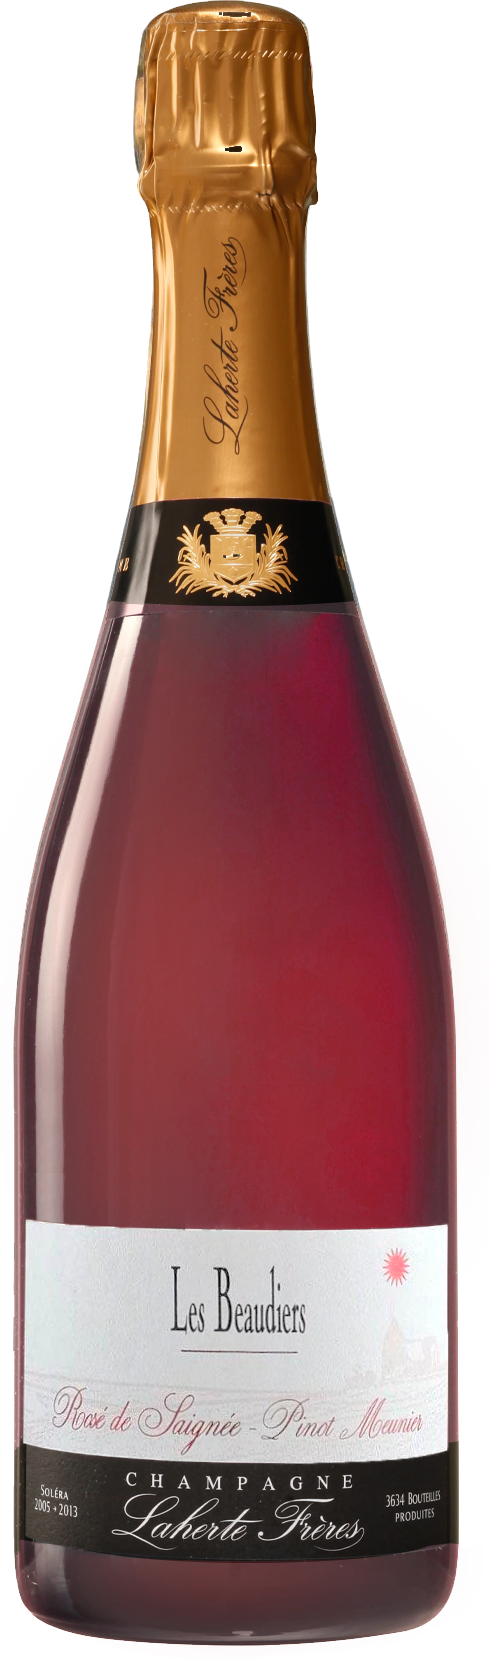 Champagne Laherte Frères Les Beaudiers Rosé de Saignée NV (Base 13. Disg. Mar 2016)